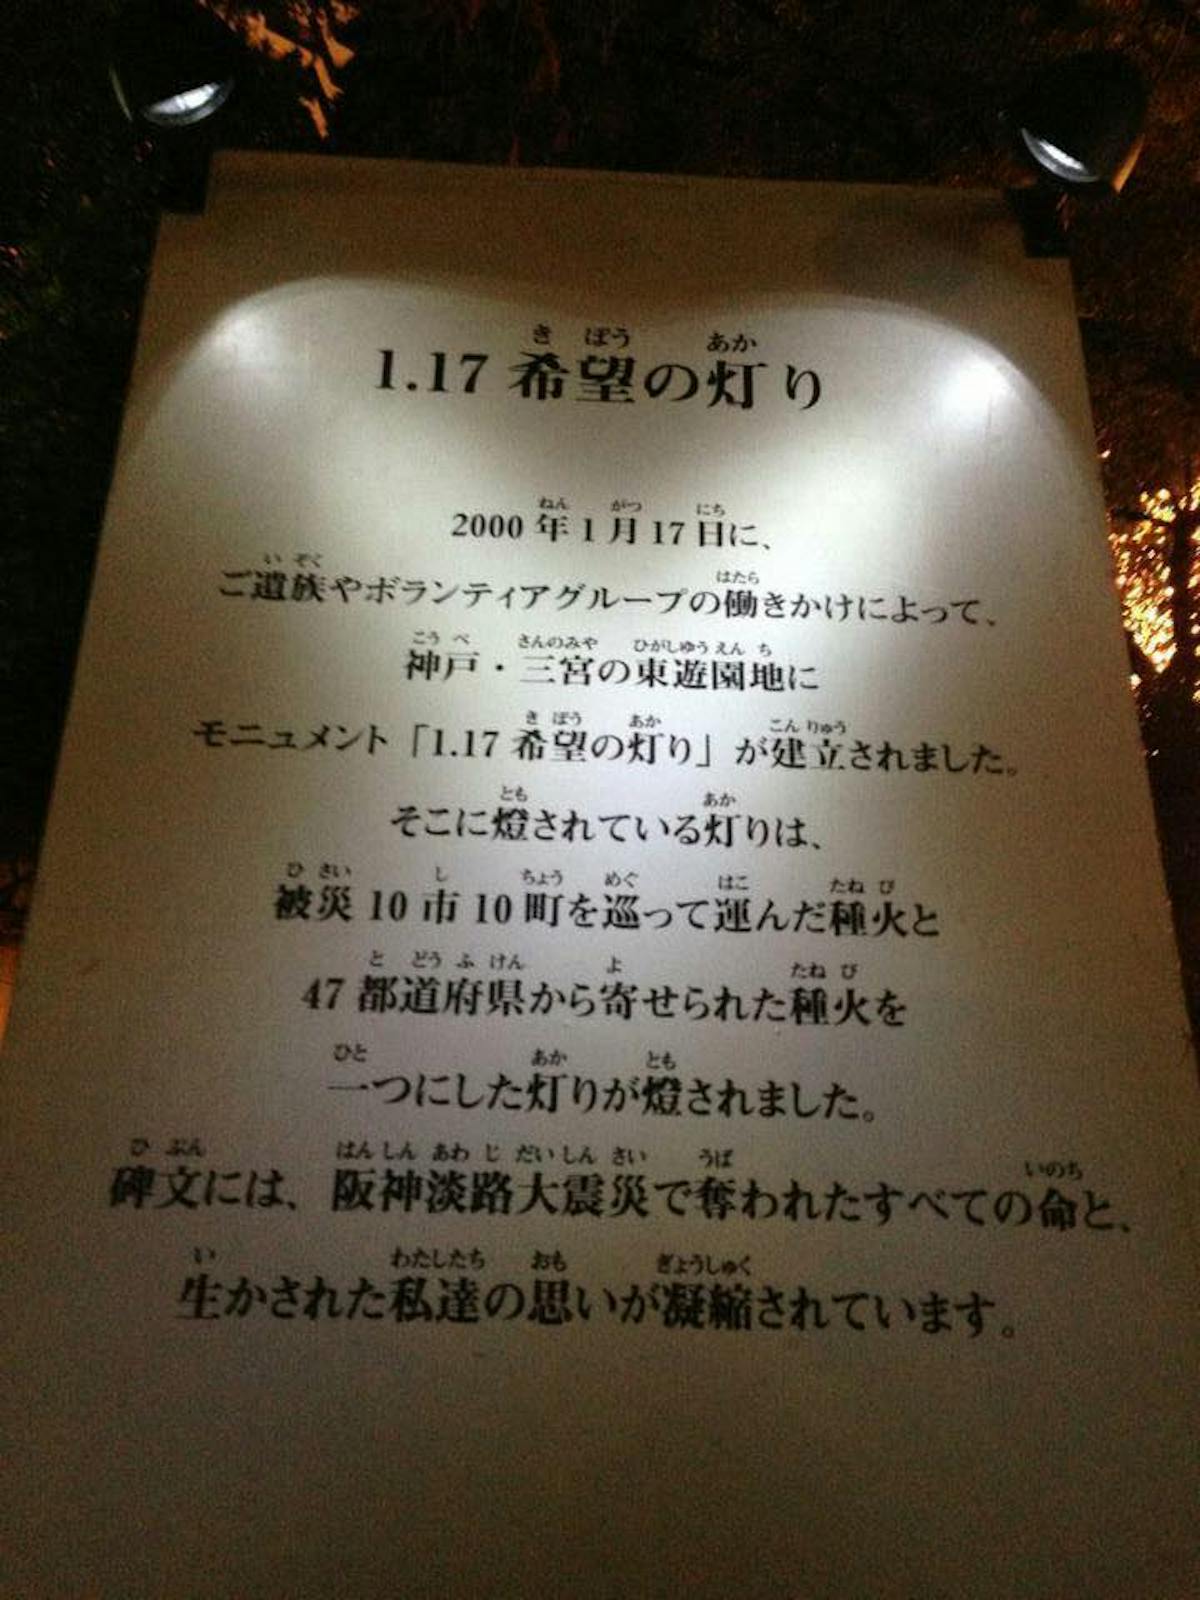 神戸ルミナリエ 希望の灯り 1995 1 17memorial オマツリジャパン あなたと祭りをつなげるメディア